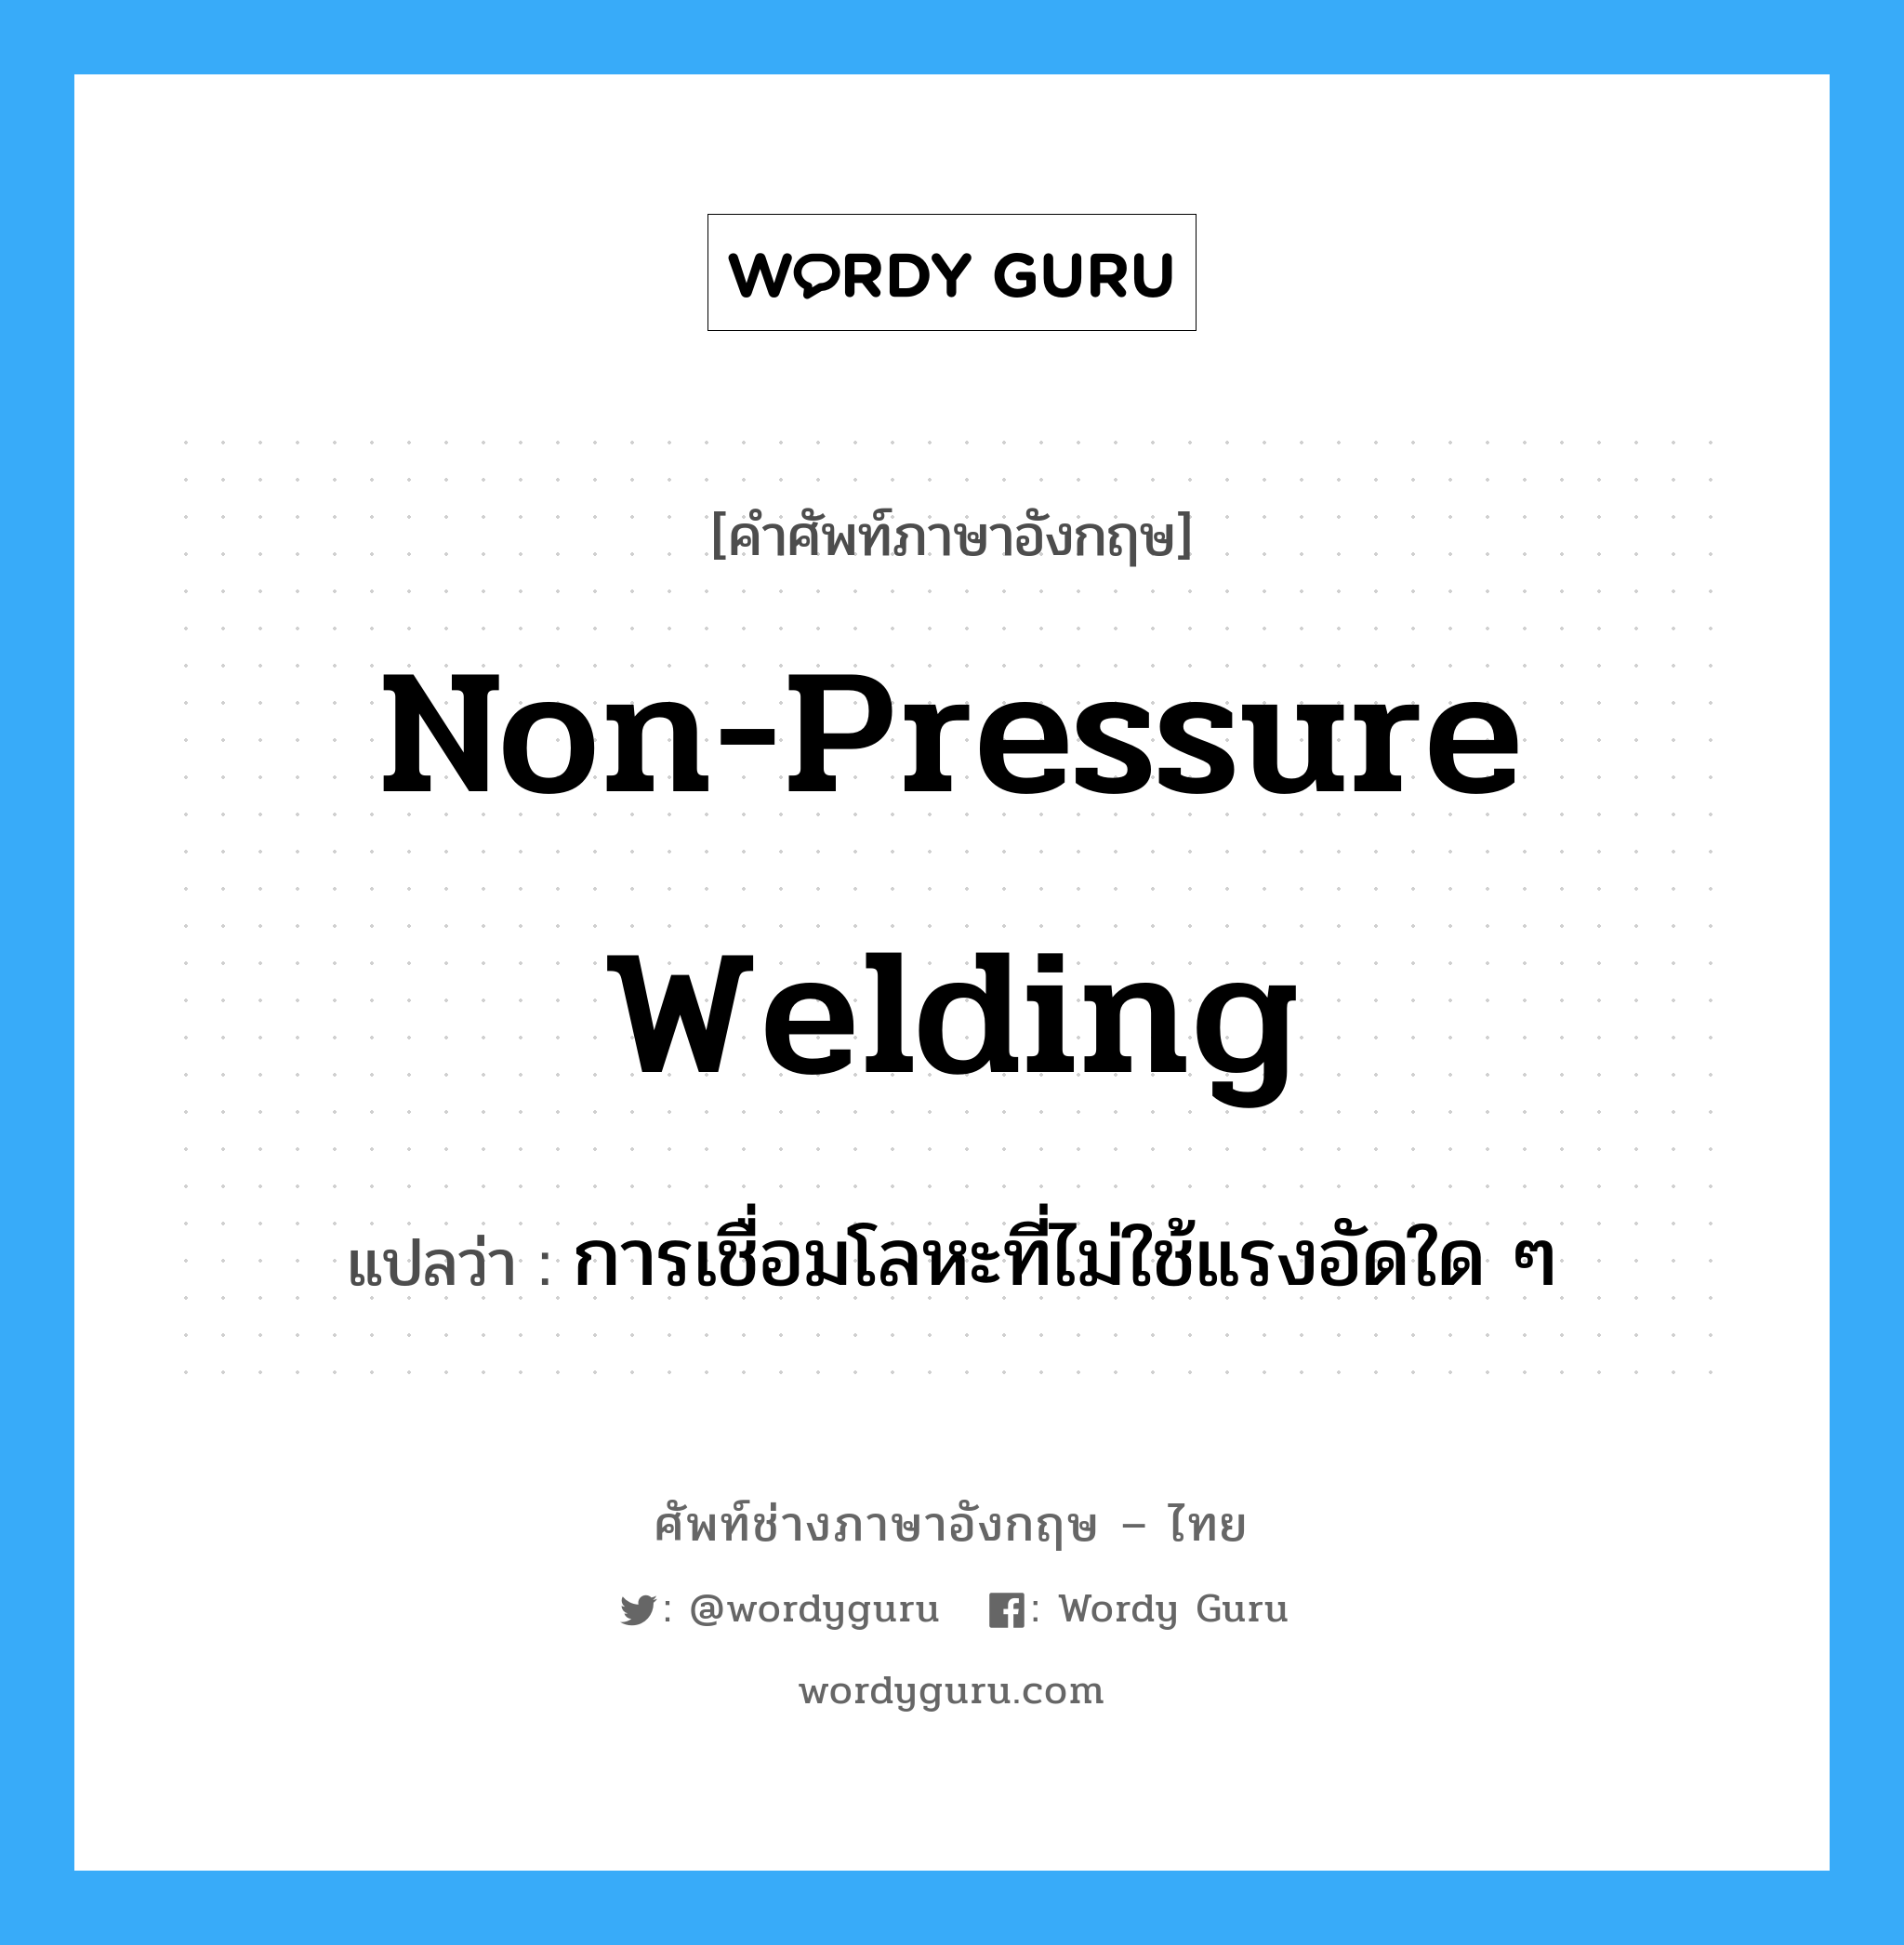 การเชื่อมโลหะที่ไม่ใช้แรงอัดใด ๆ ภาษาอังกฤษ?, คำศัพท์ช่างภาษาอังกฤษ - ไทย การเชื่อมโลหะที่ไม่ใช้แรงอัดใด ๆ คำศัพท์ภาษาอังกฤษ การเชื่อมโลหะที่ไม่ใช้แรงอัดใด ๆ แปลว่า non-pressure welding